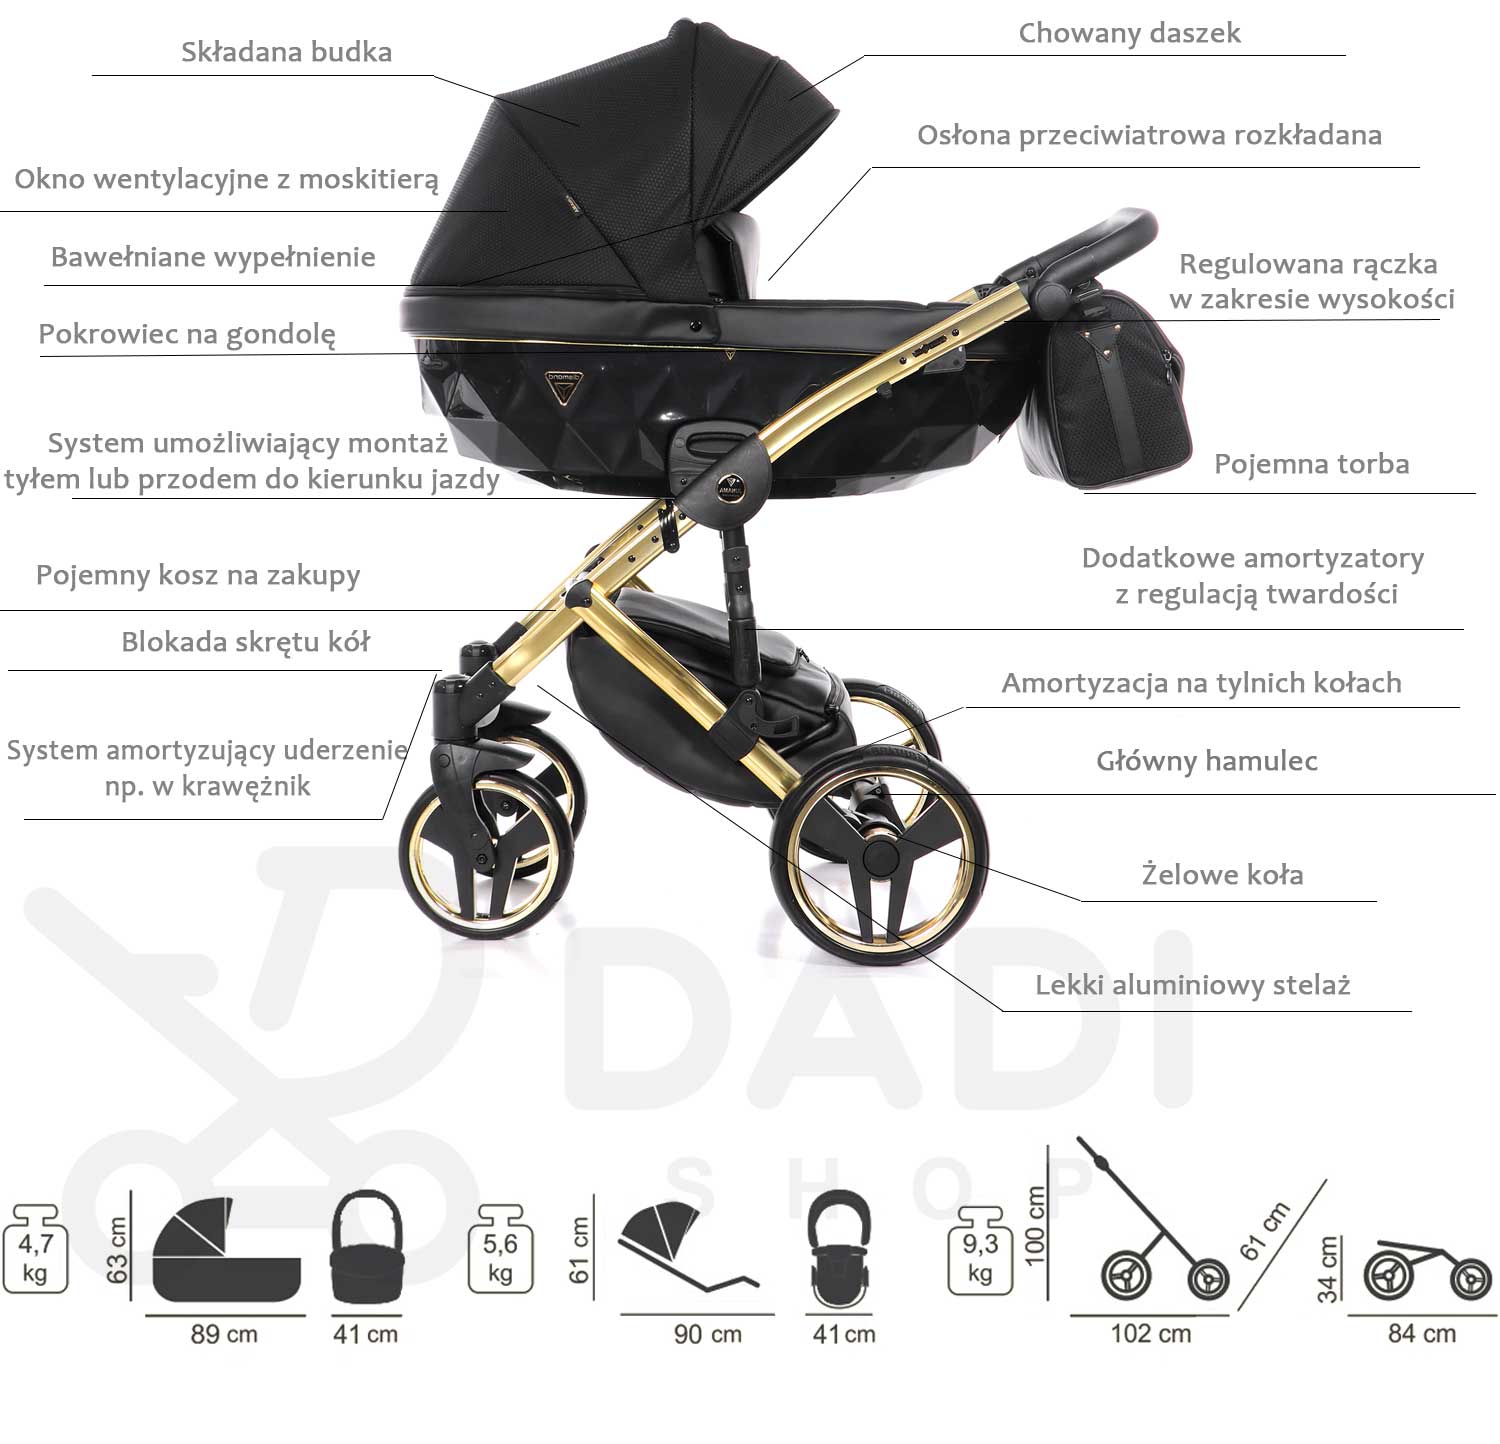 wózek Saphire wielofunkcyjny dziecięcy model Junama opis wózka Dadi Shop